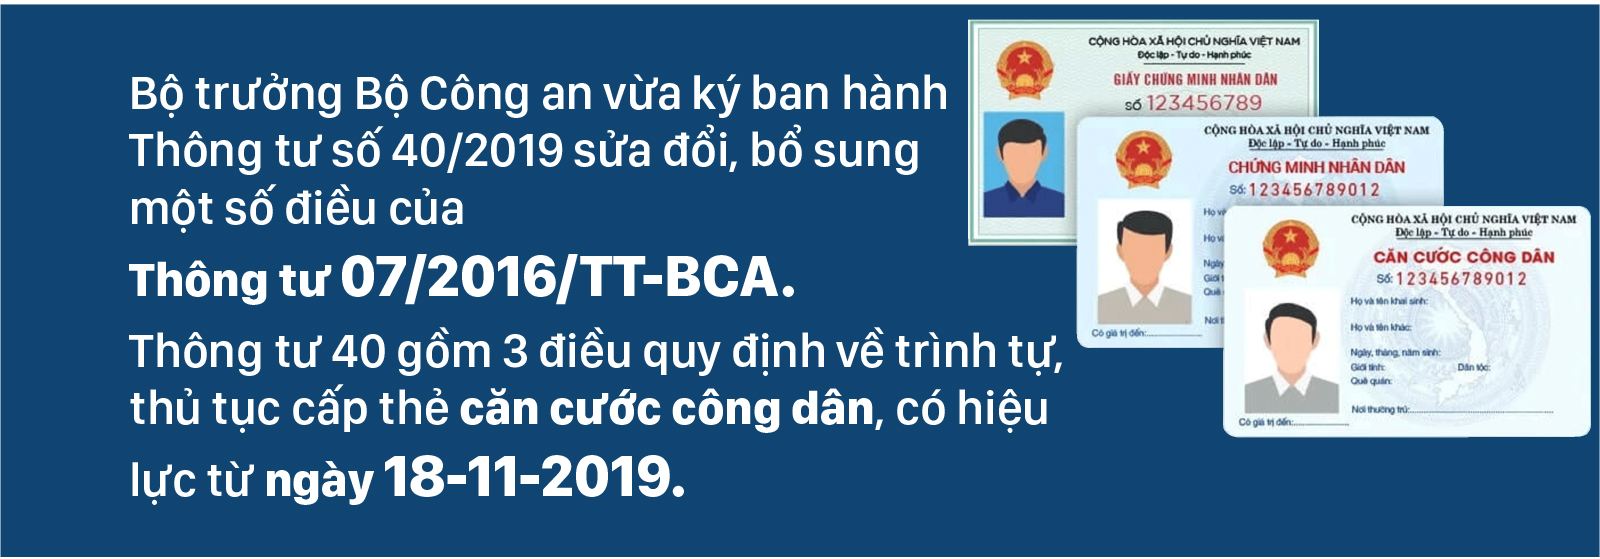 Từ ngày 18-11-2019 thủ tục cấp thẻ căn cước công dân có gì mới? ảnh 1